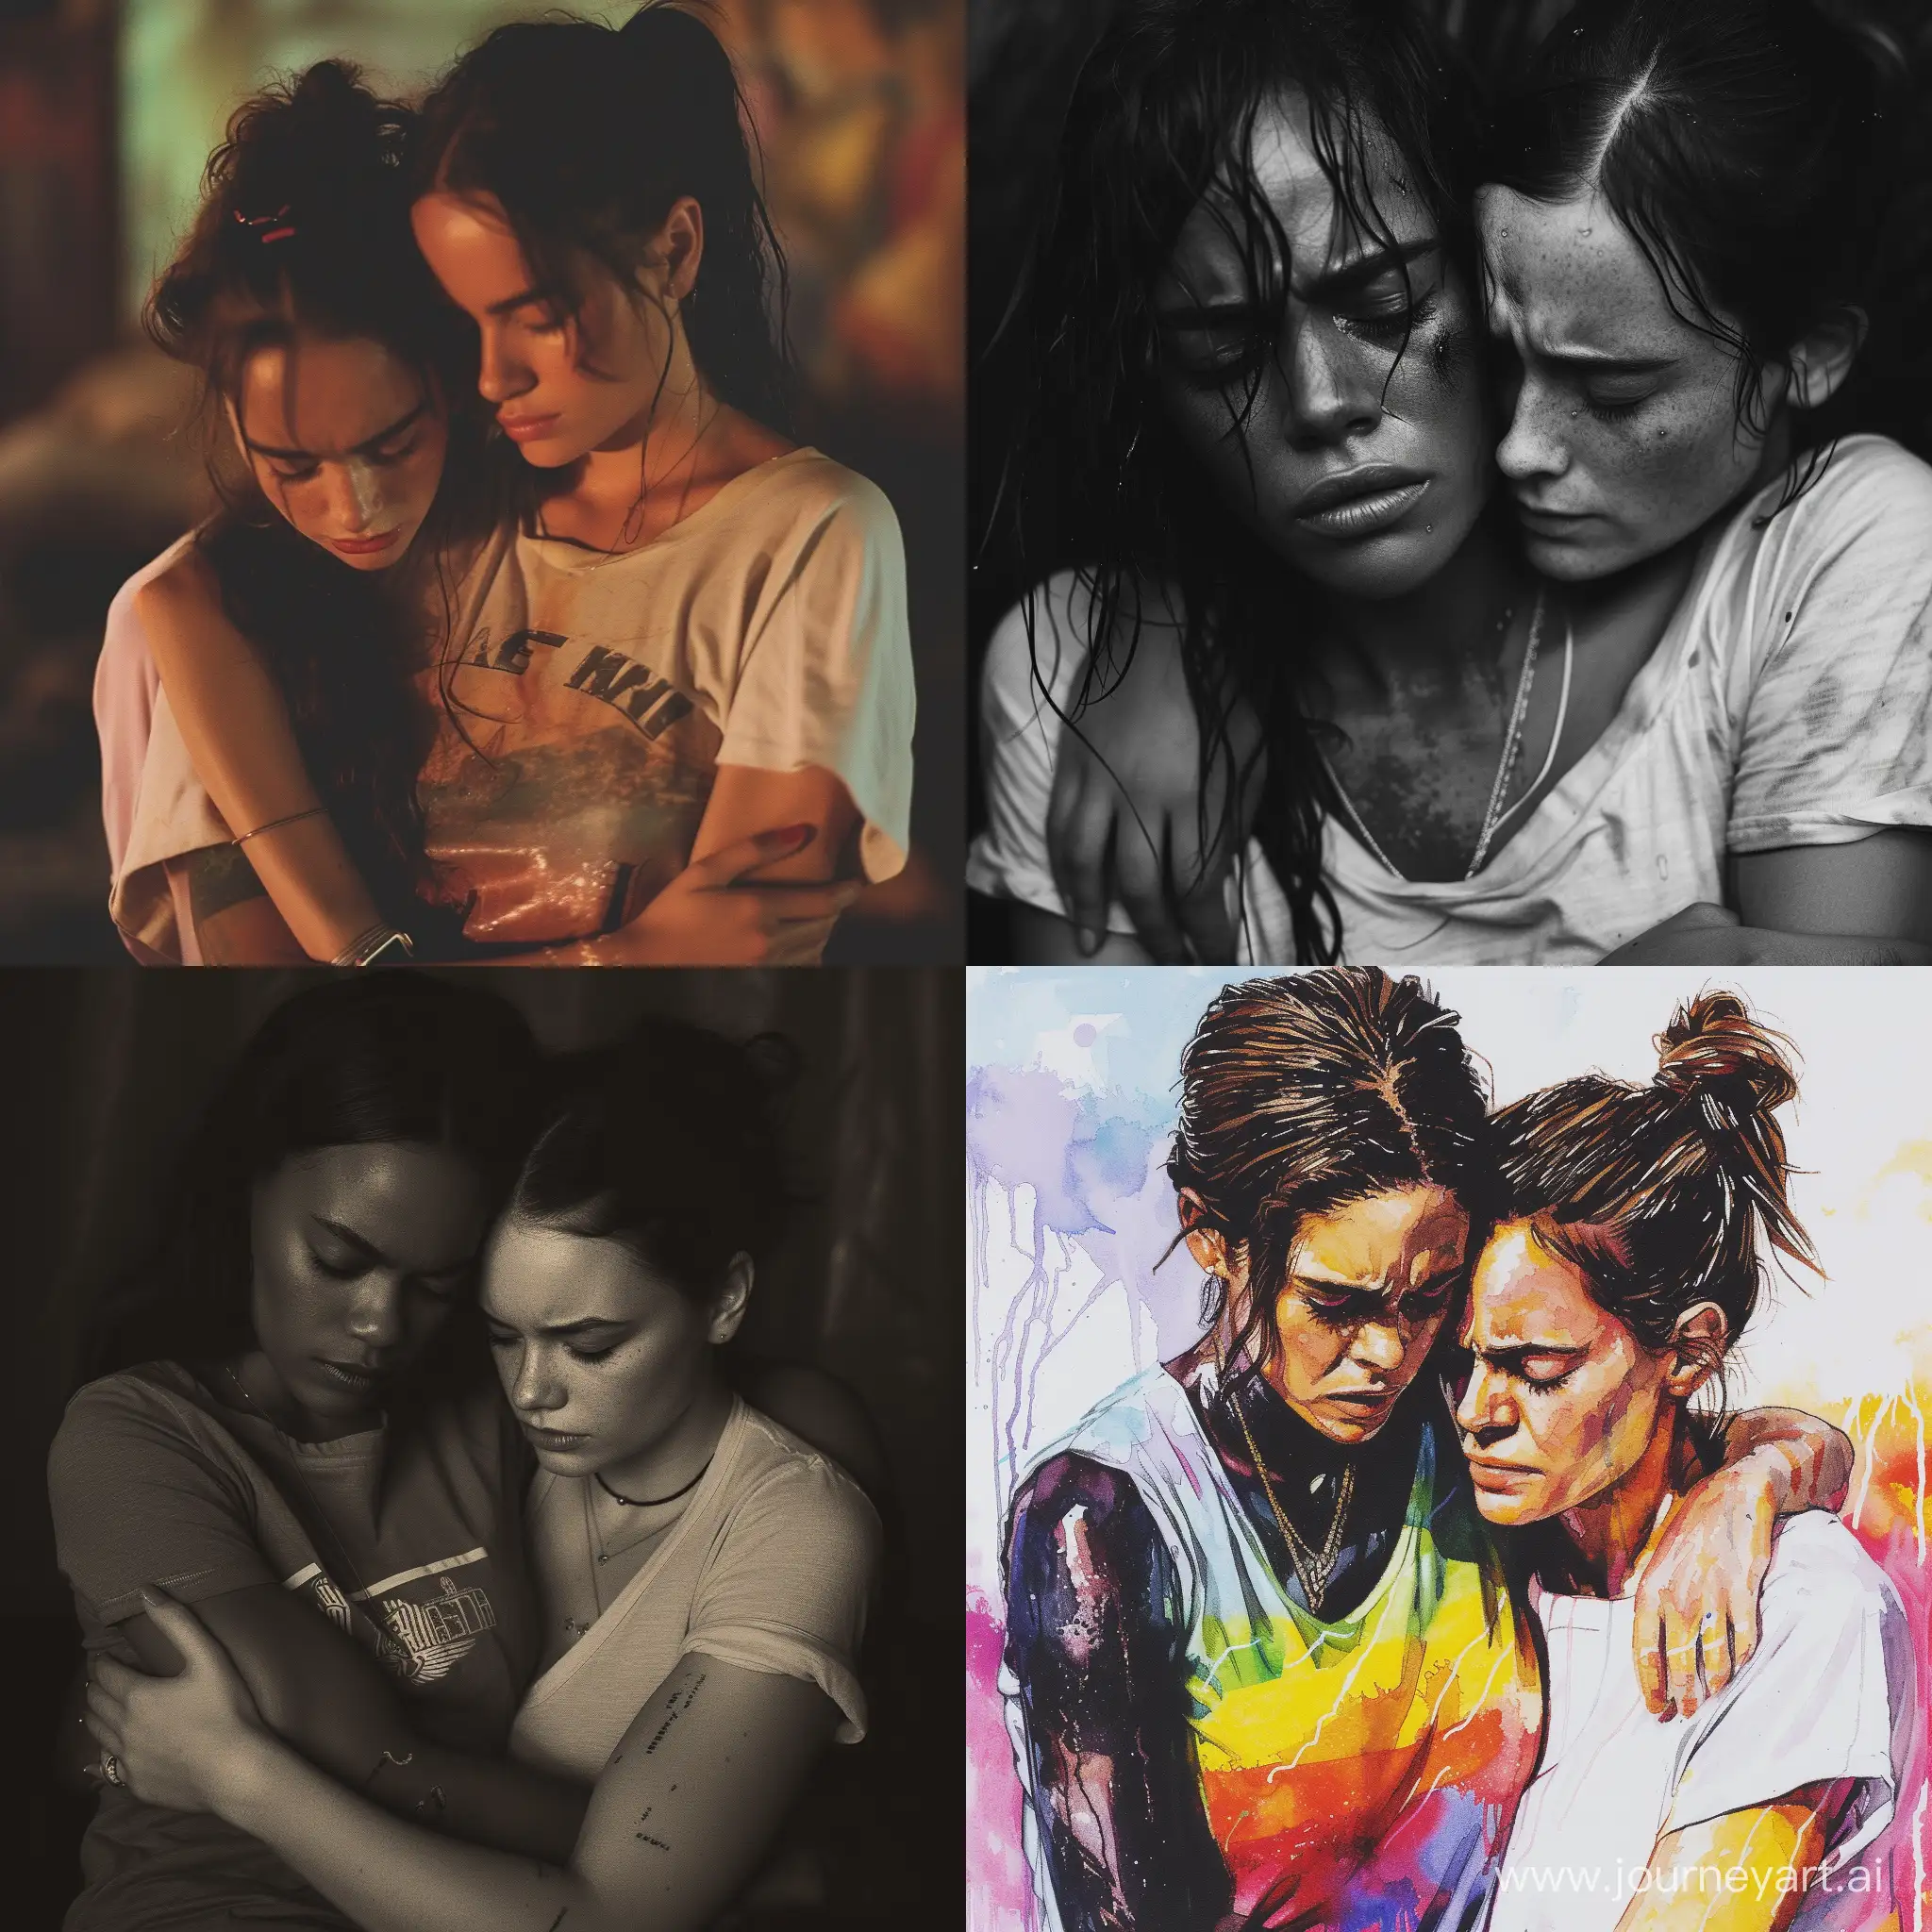 Comforting-Embrace-Emma-Watson-Supports-Crying-Lesbian-Girls